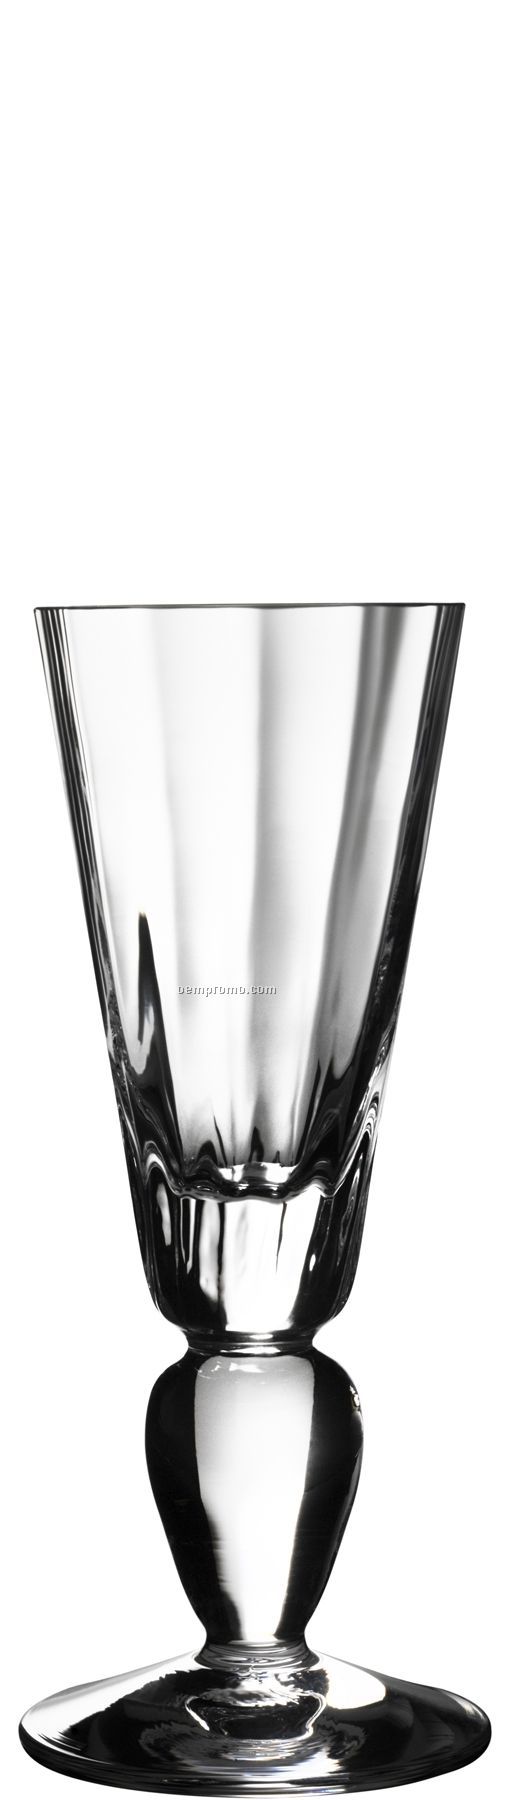 Linne Glass Aquavit Stemware W/ Bulb Pedestal Stem By Goran Warff